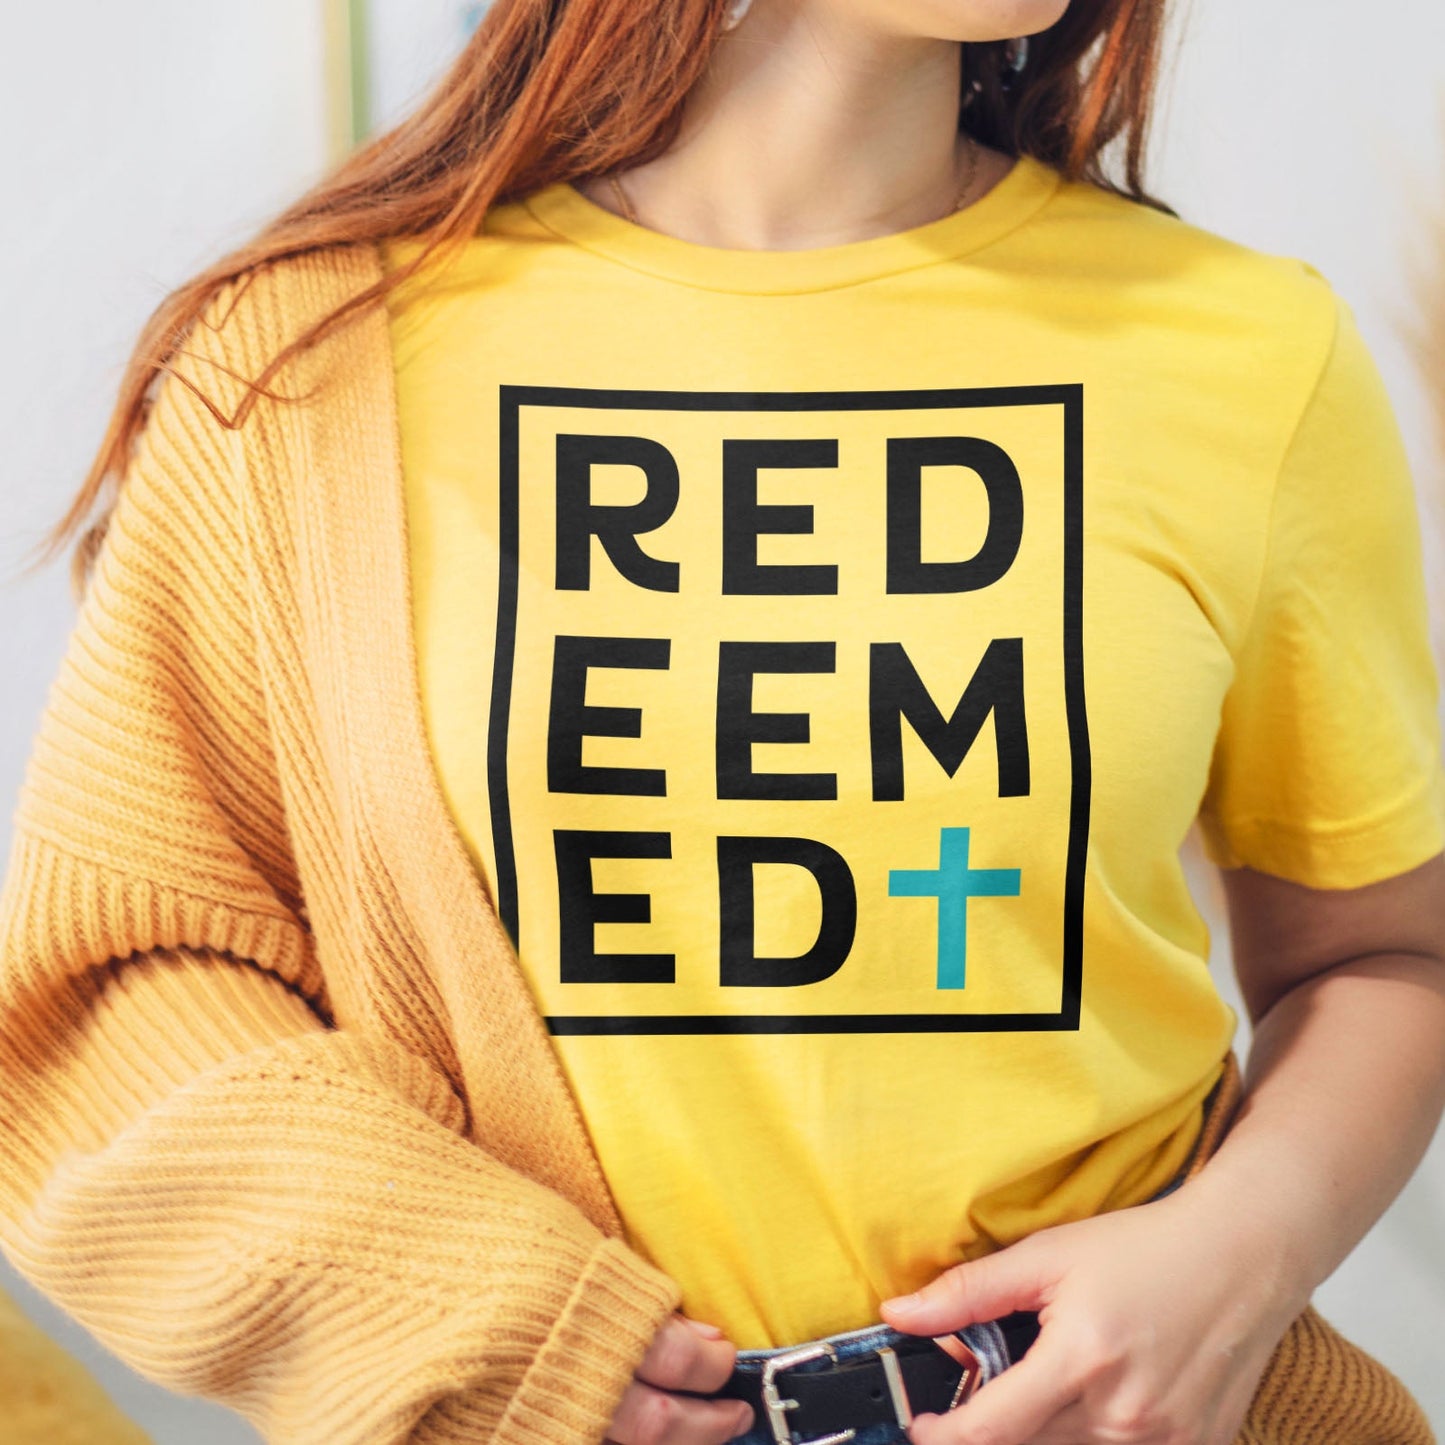 Redeemed Block Tee Shirts For Women - Christian Shirts for Women - Religious Tee Shirts